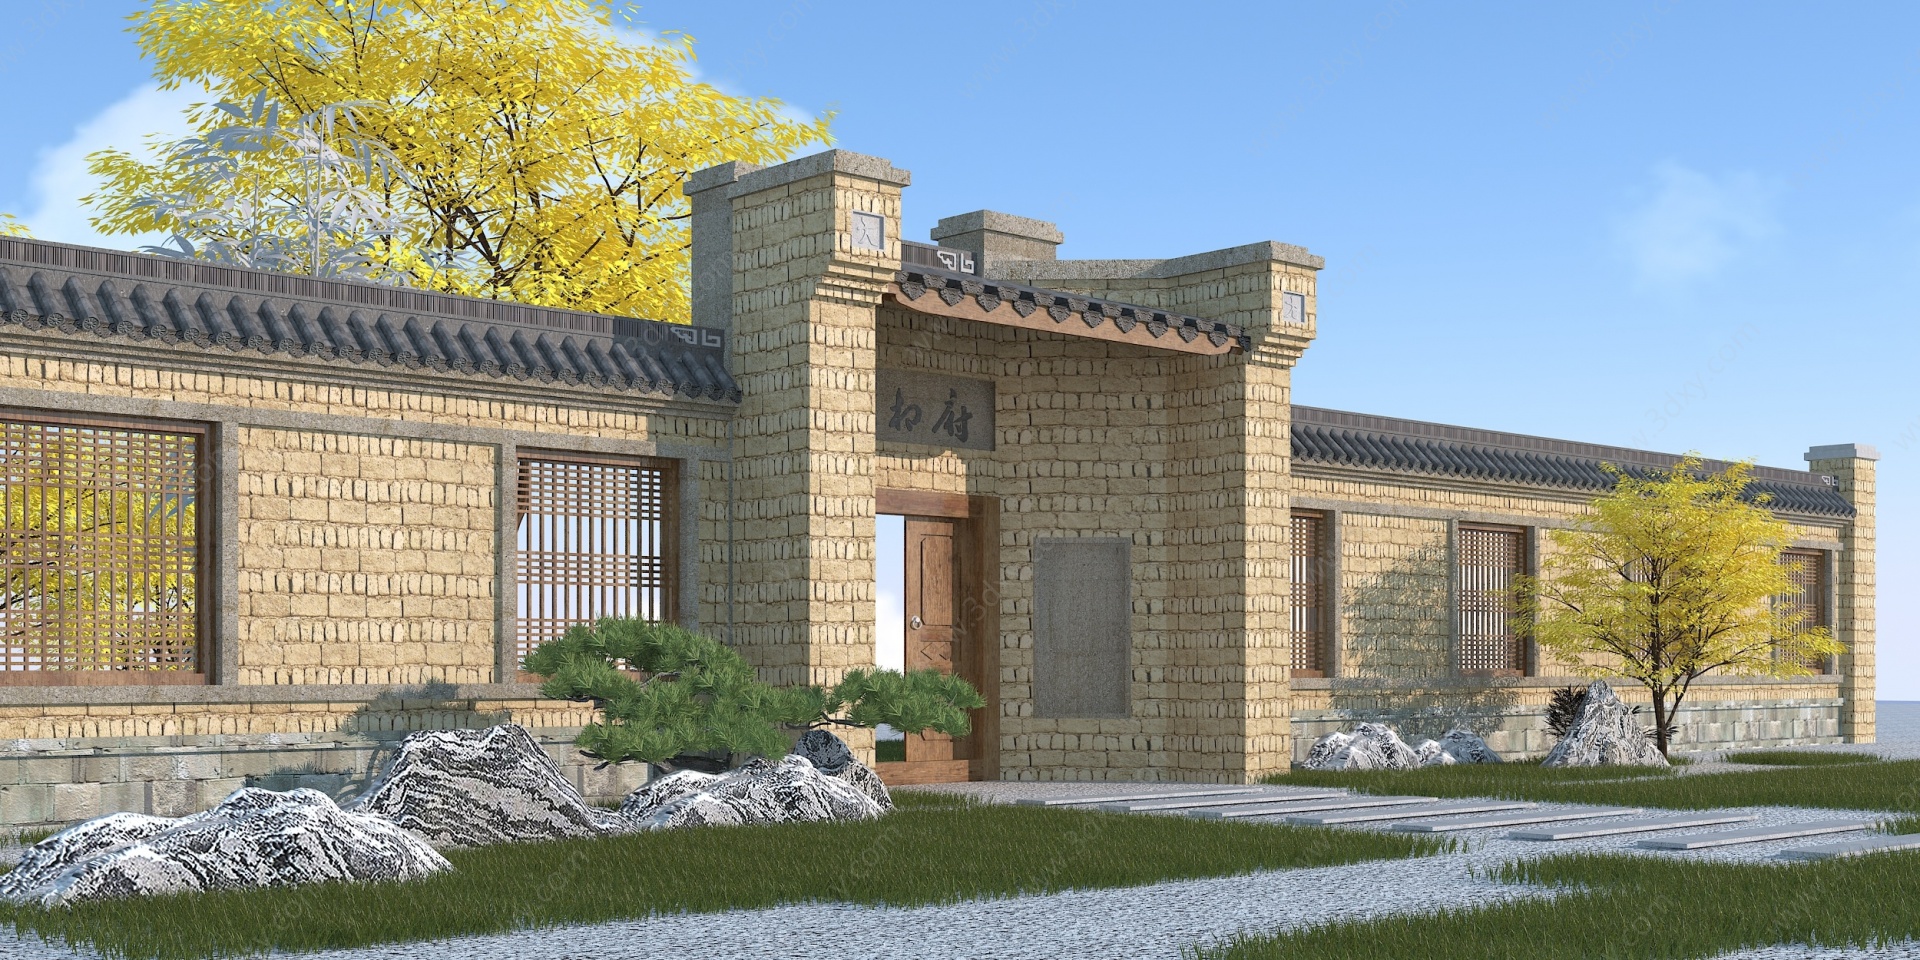 中式庭院门3D模型